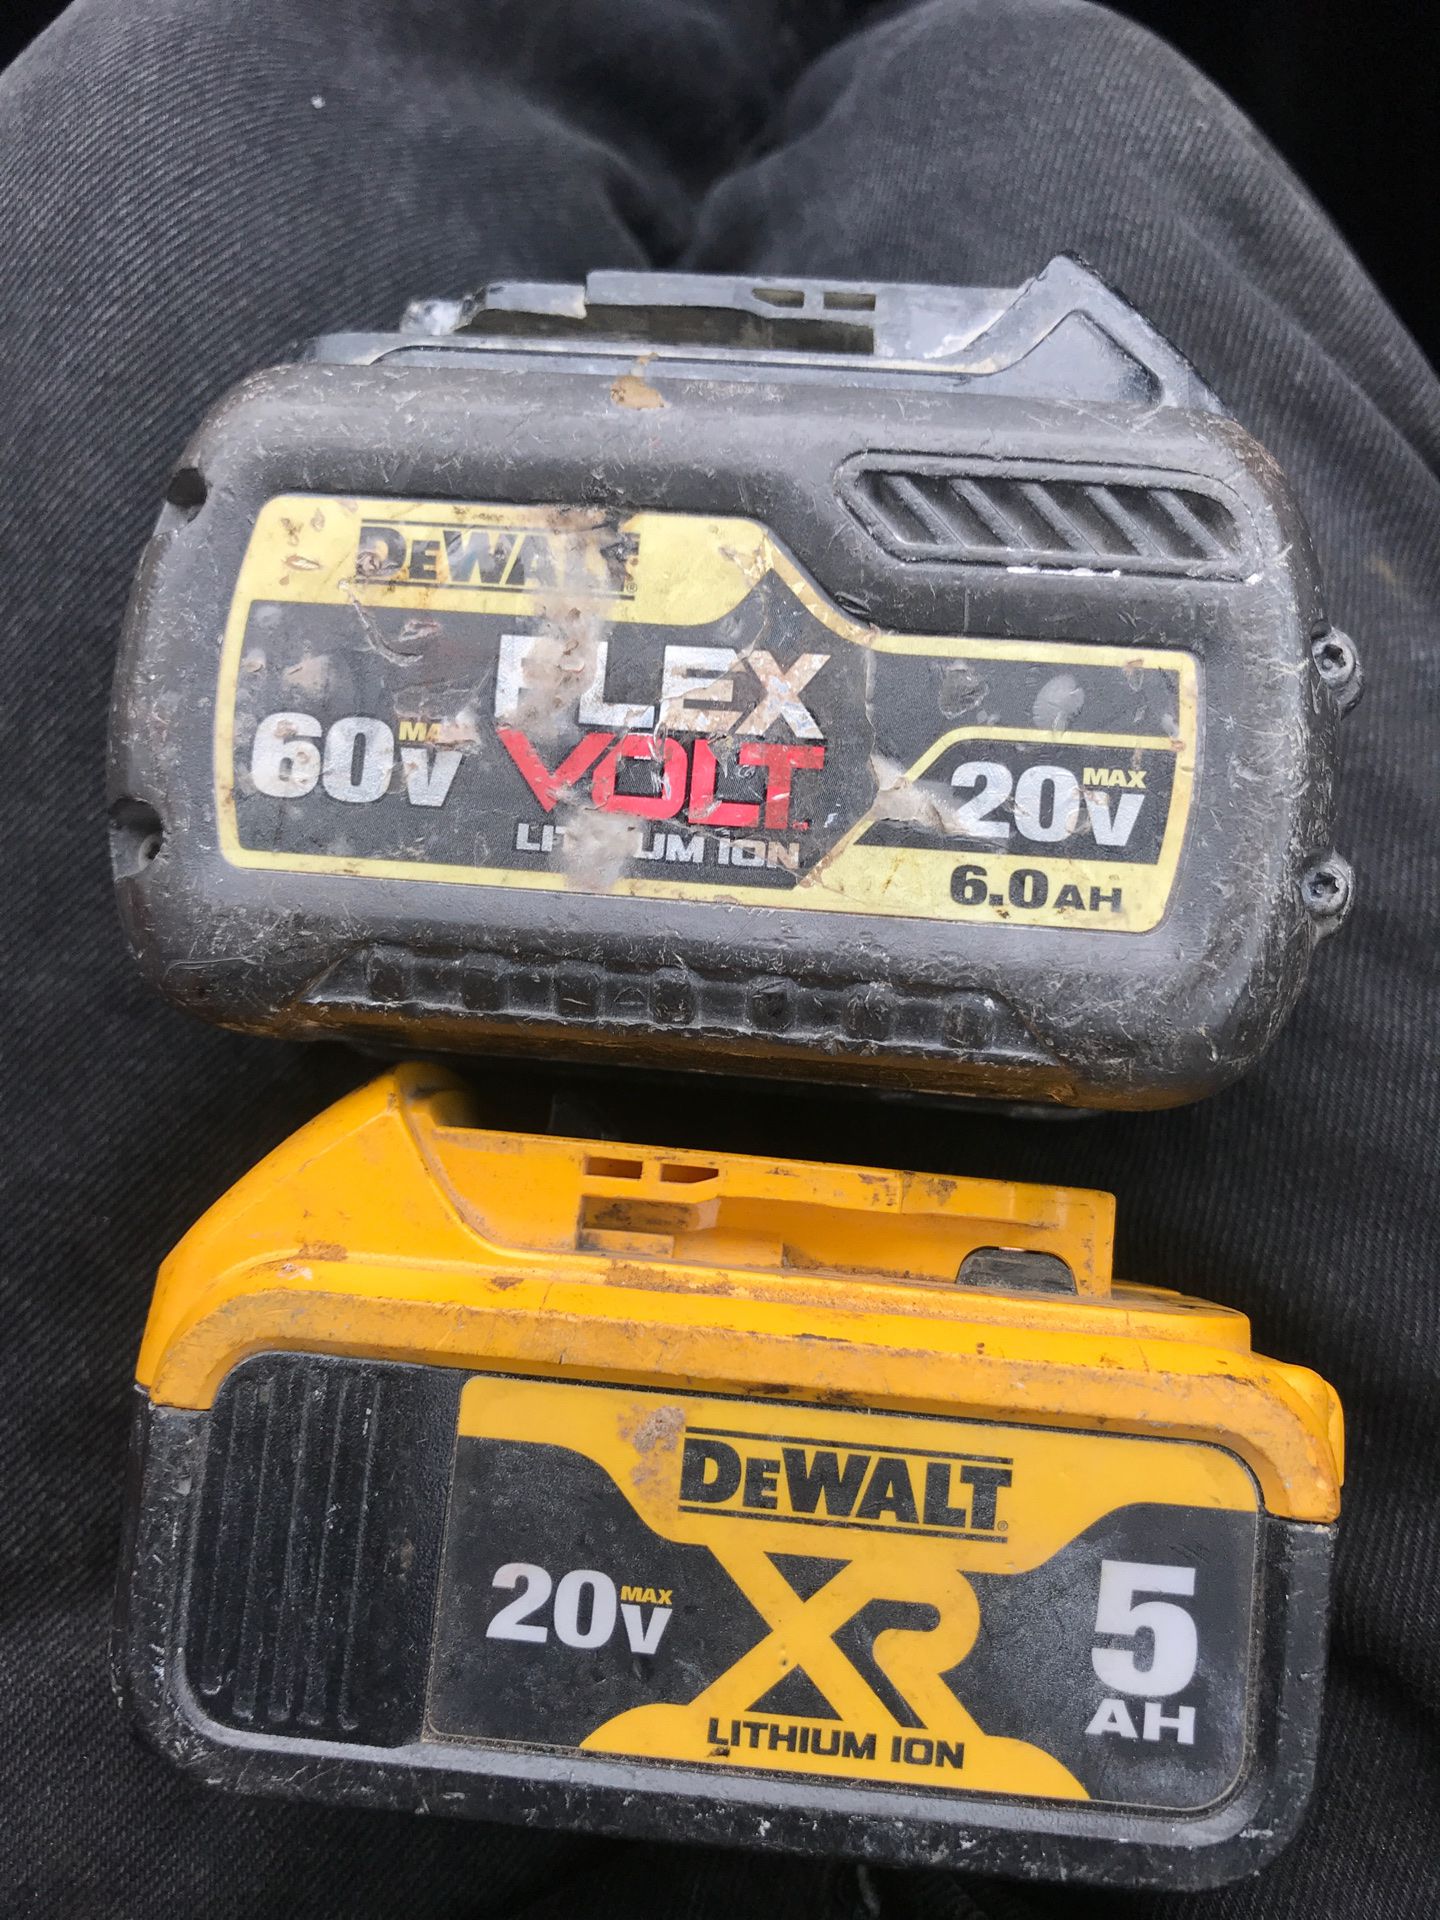 60v/20v flex volt and 20v xr5AH Dewalt batteries